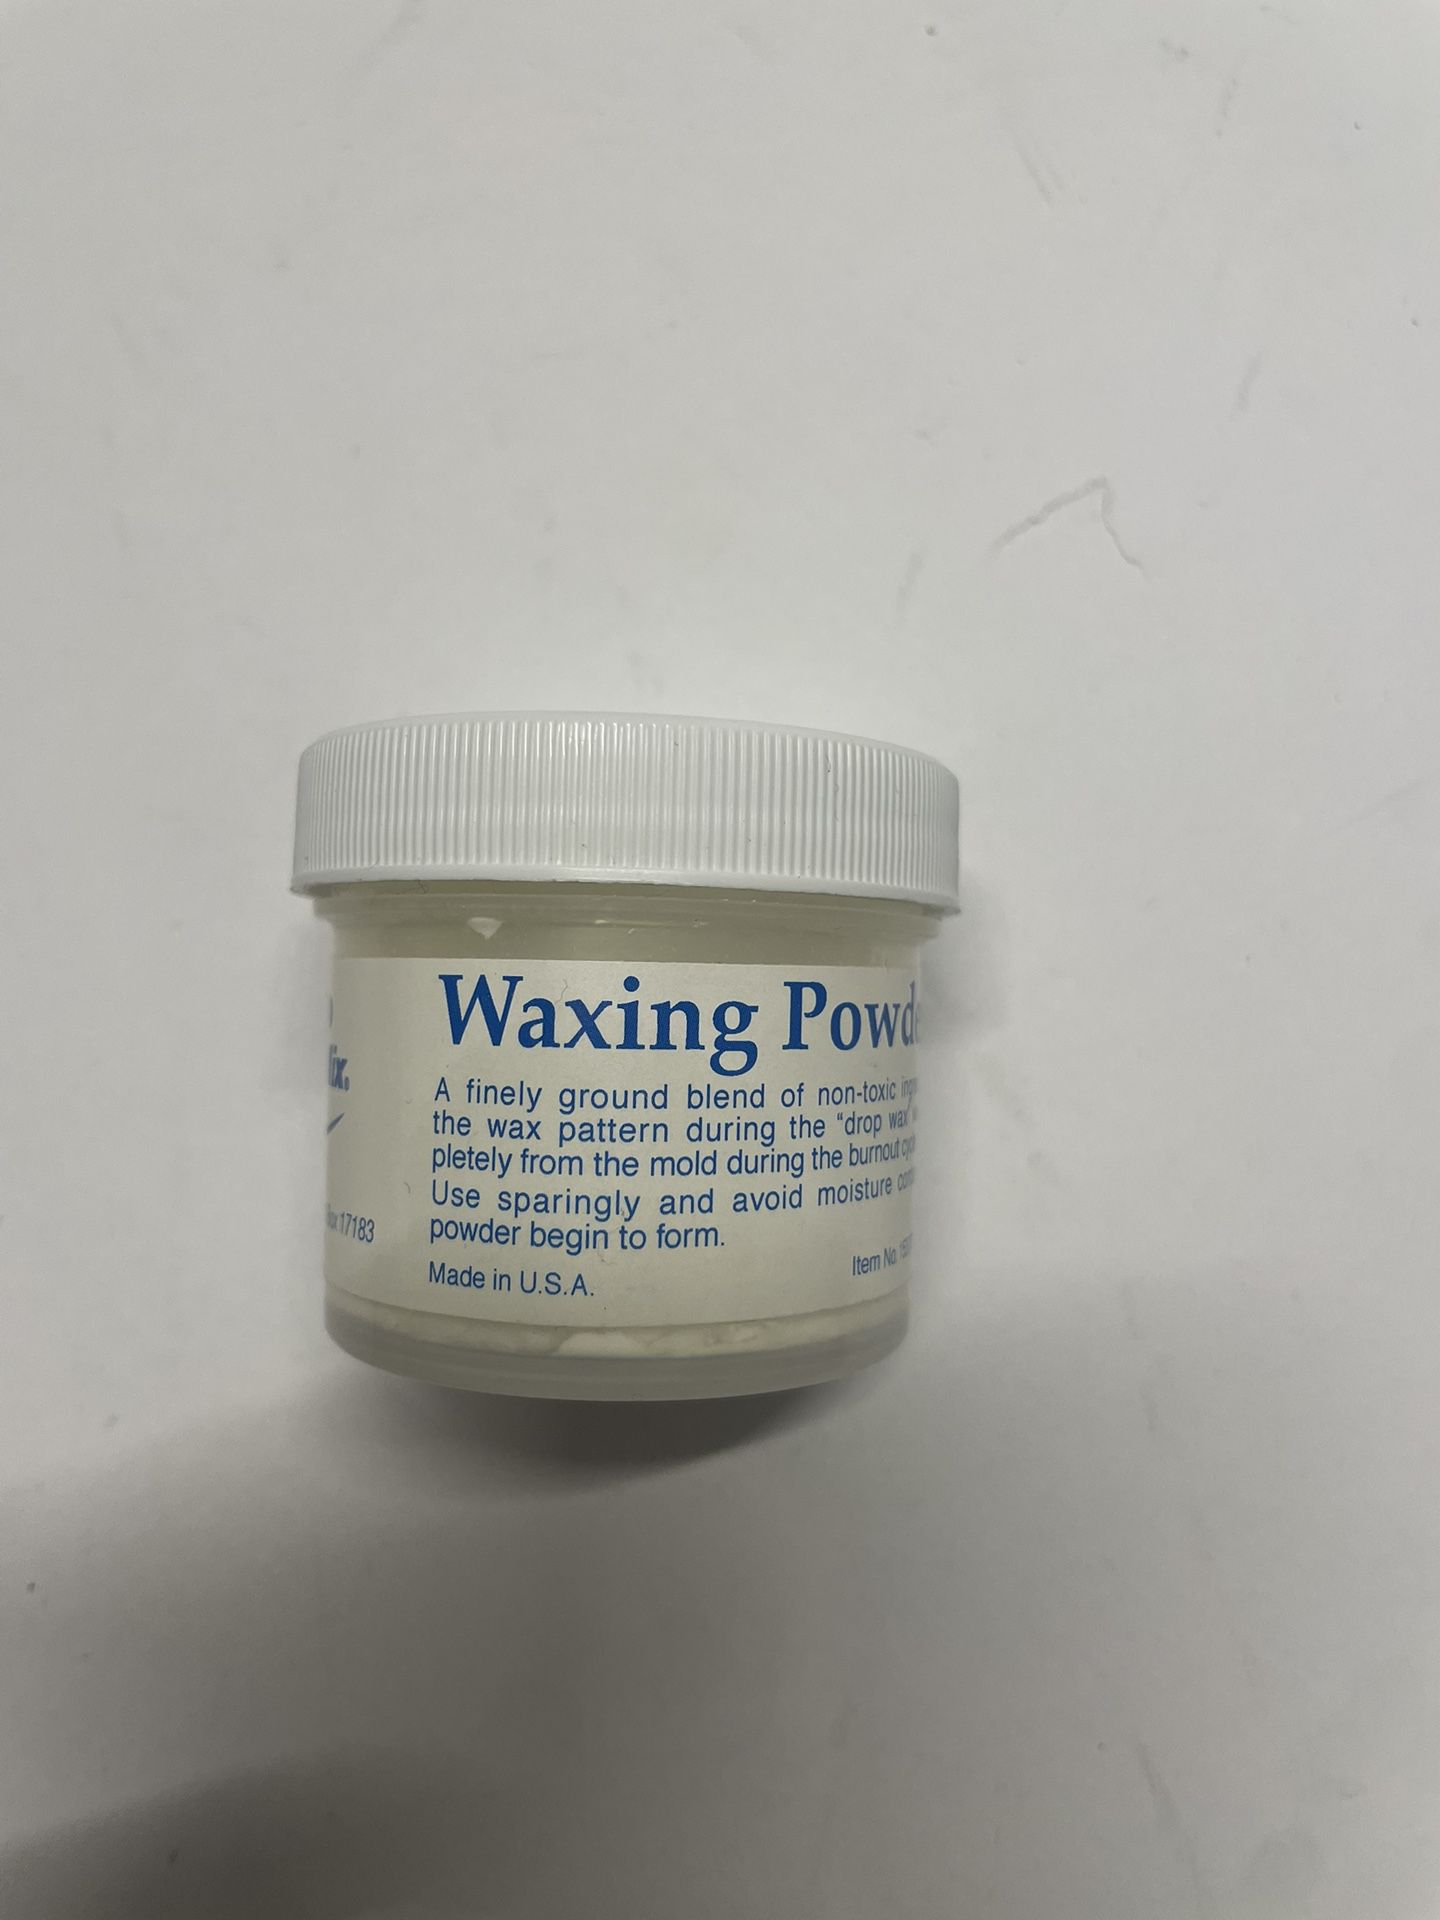 Whipmix 15377 Waxing Powder 25gm Dental